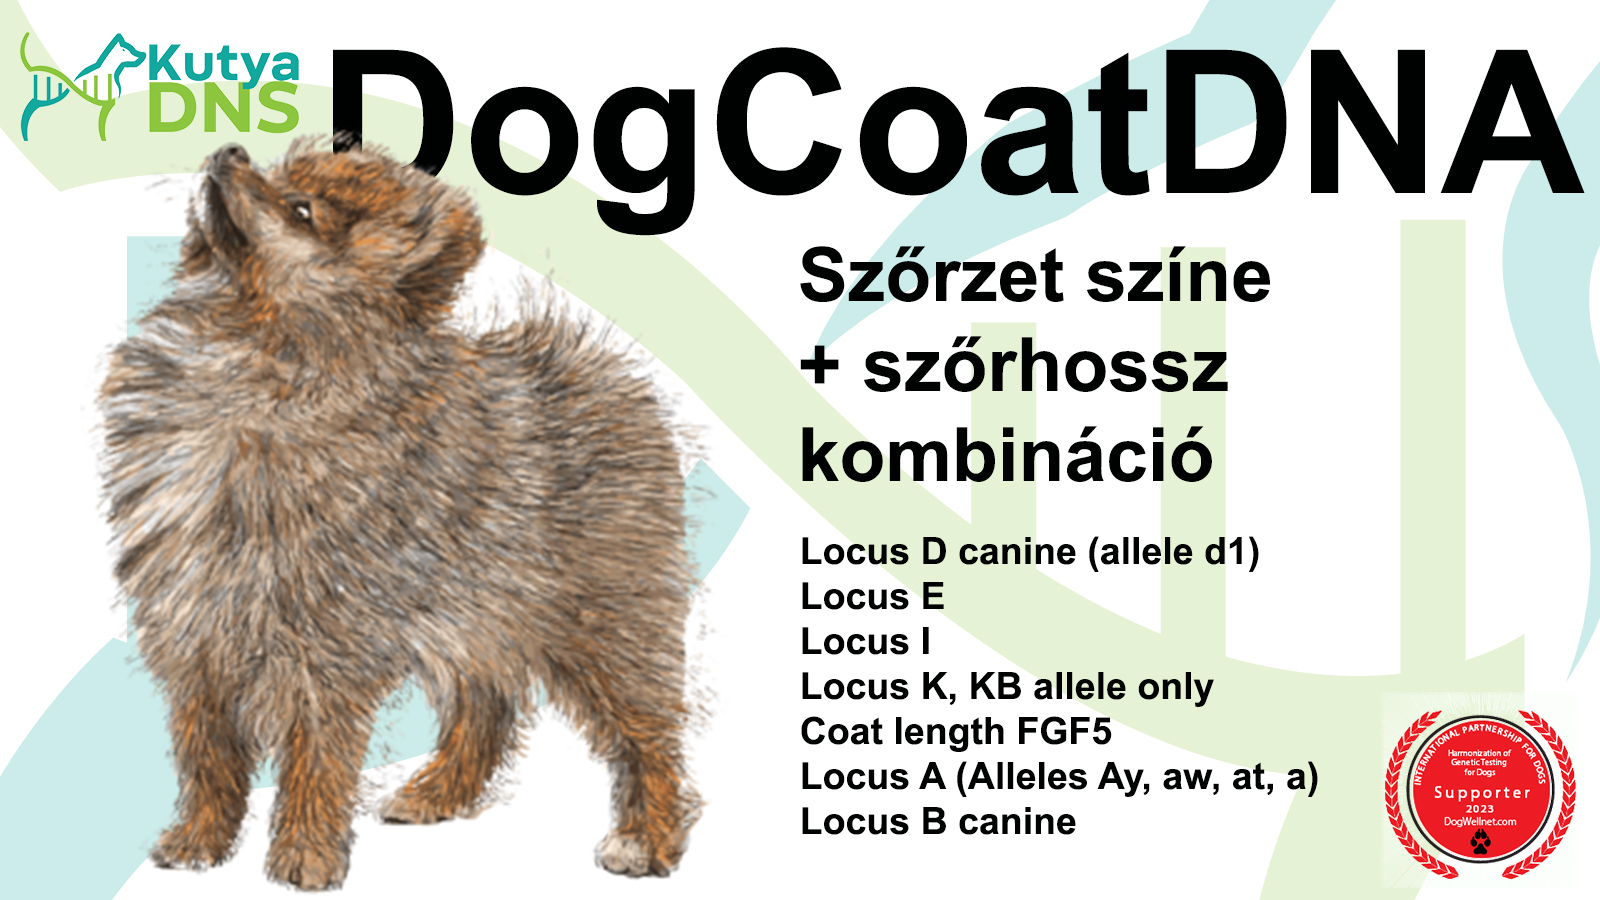 DogCoatDNA